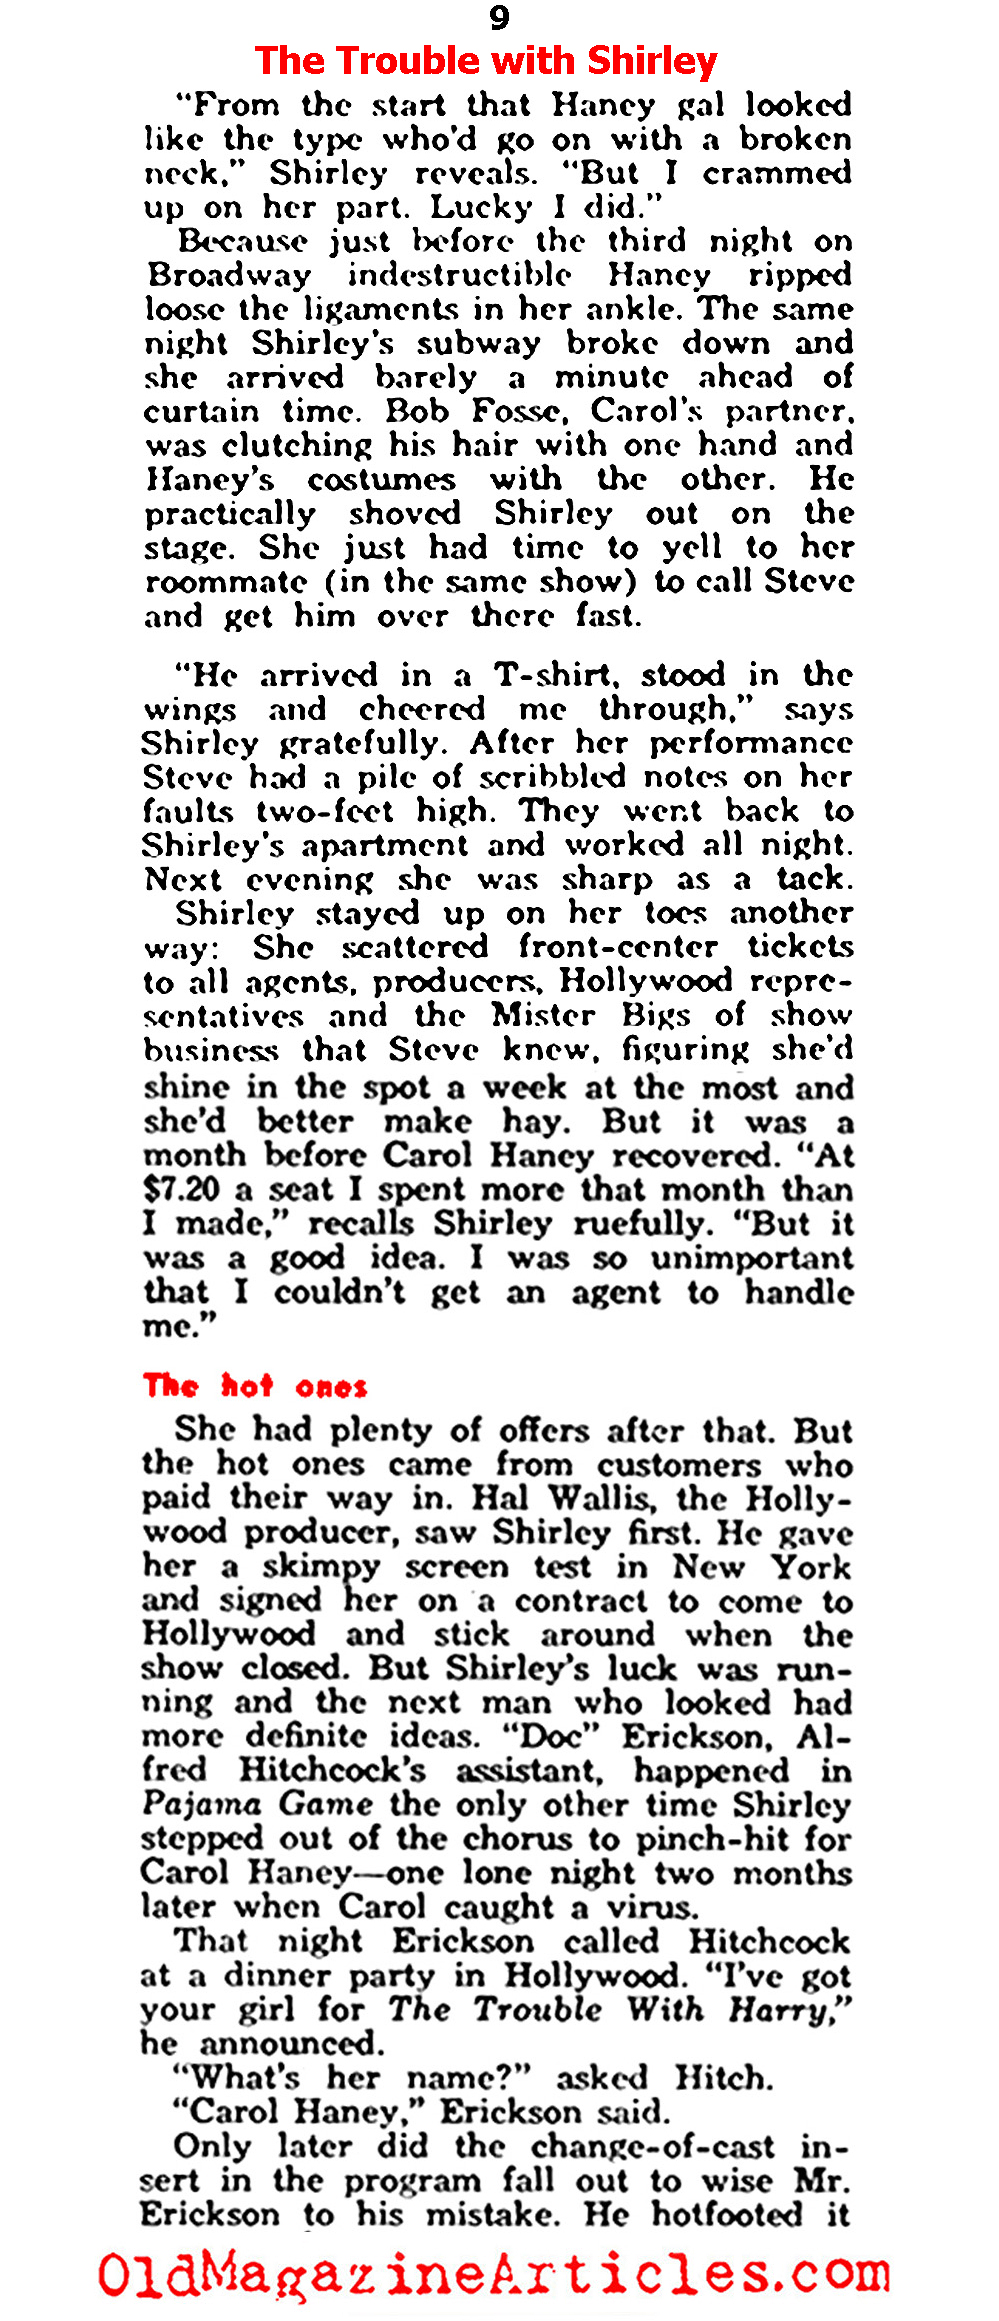 Shirley MacLaine at 22 (Modern Screen, 1956)